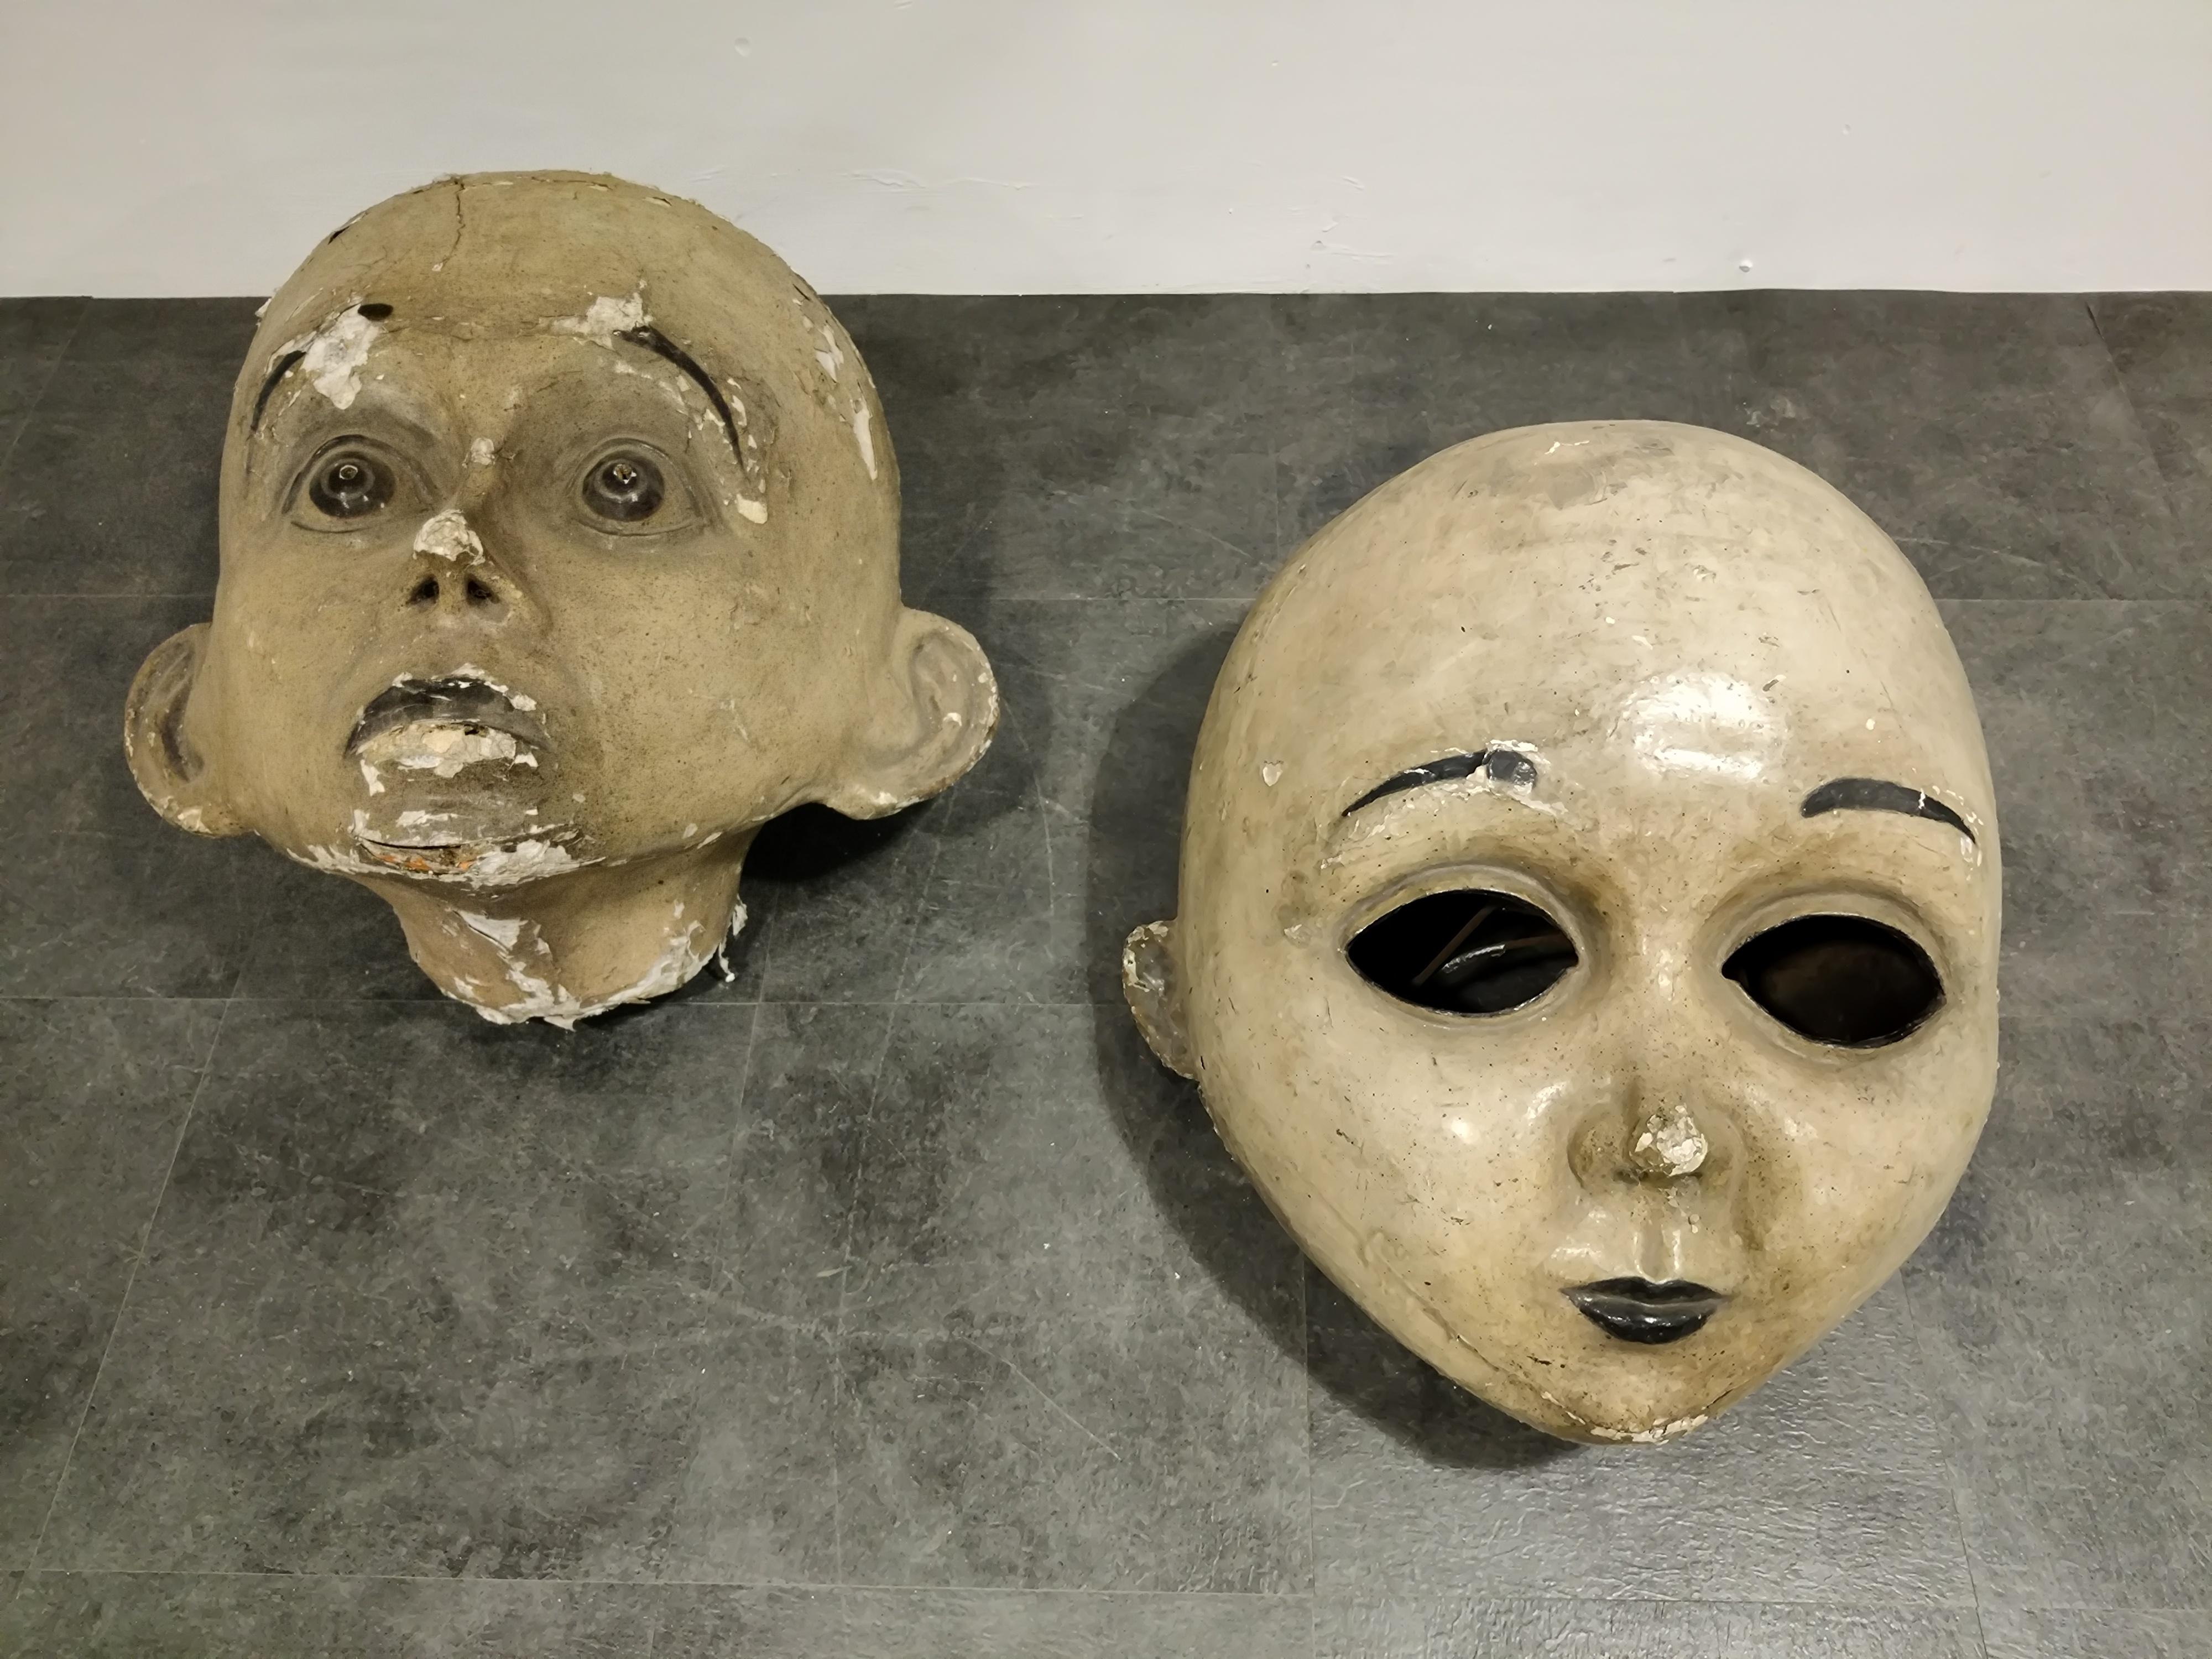 oldest mask ever found